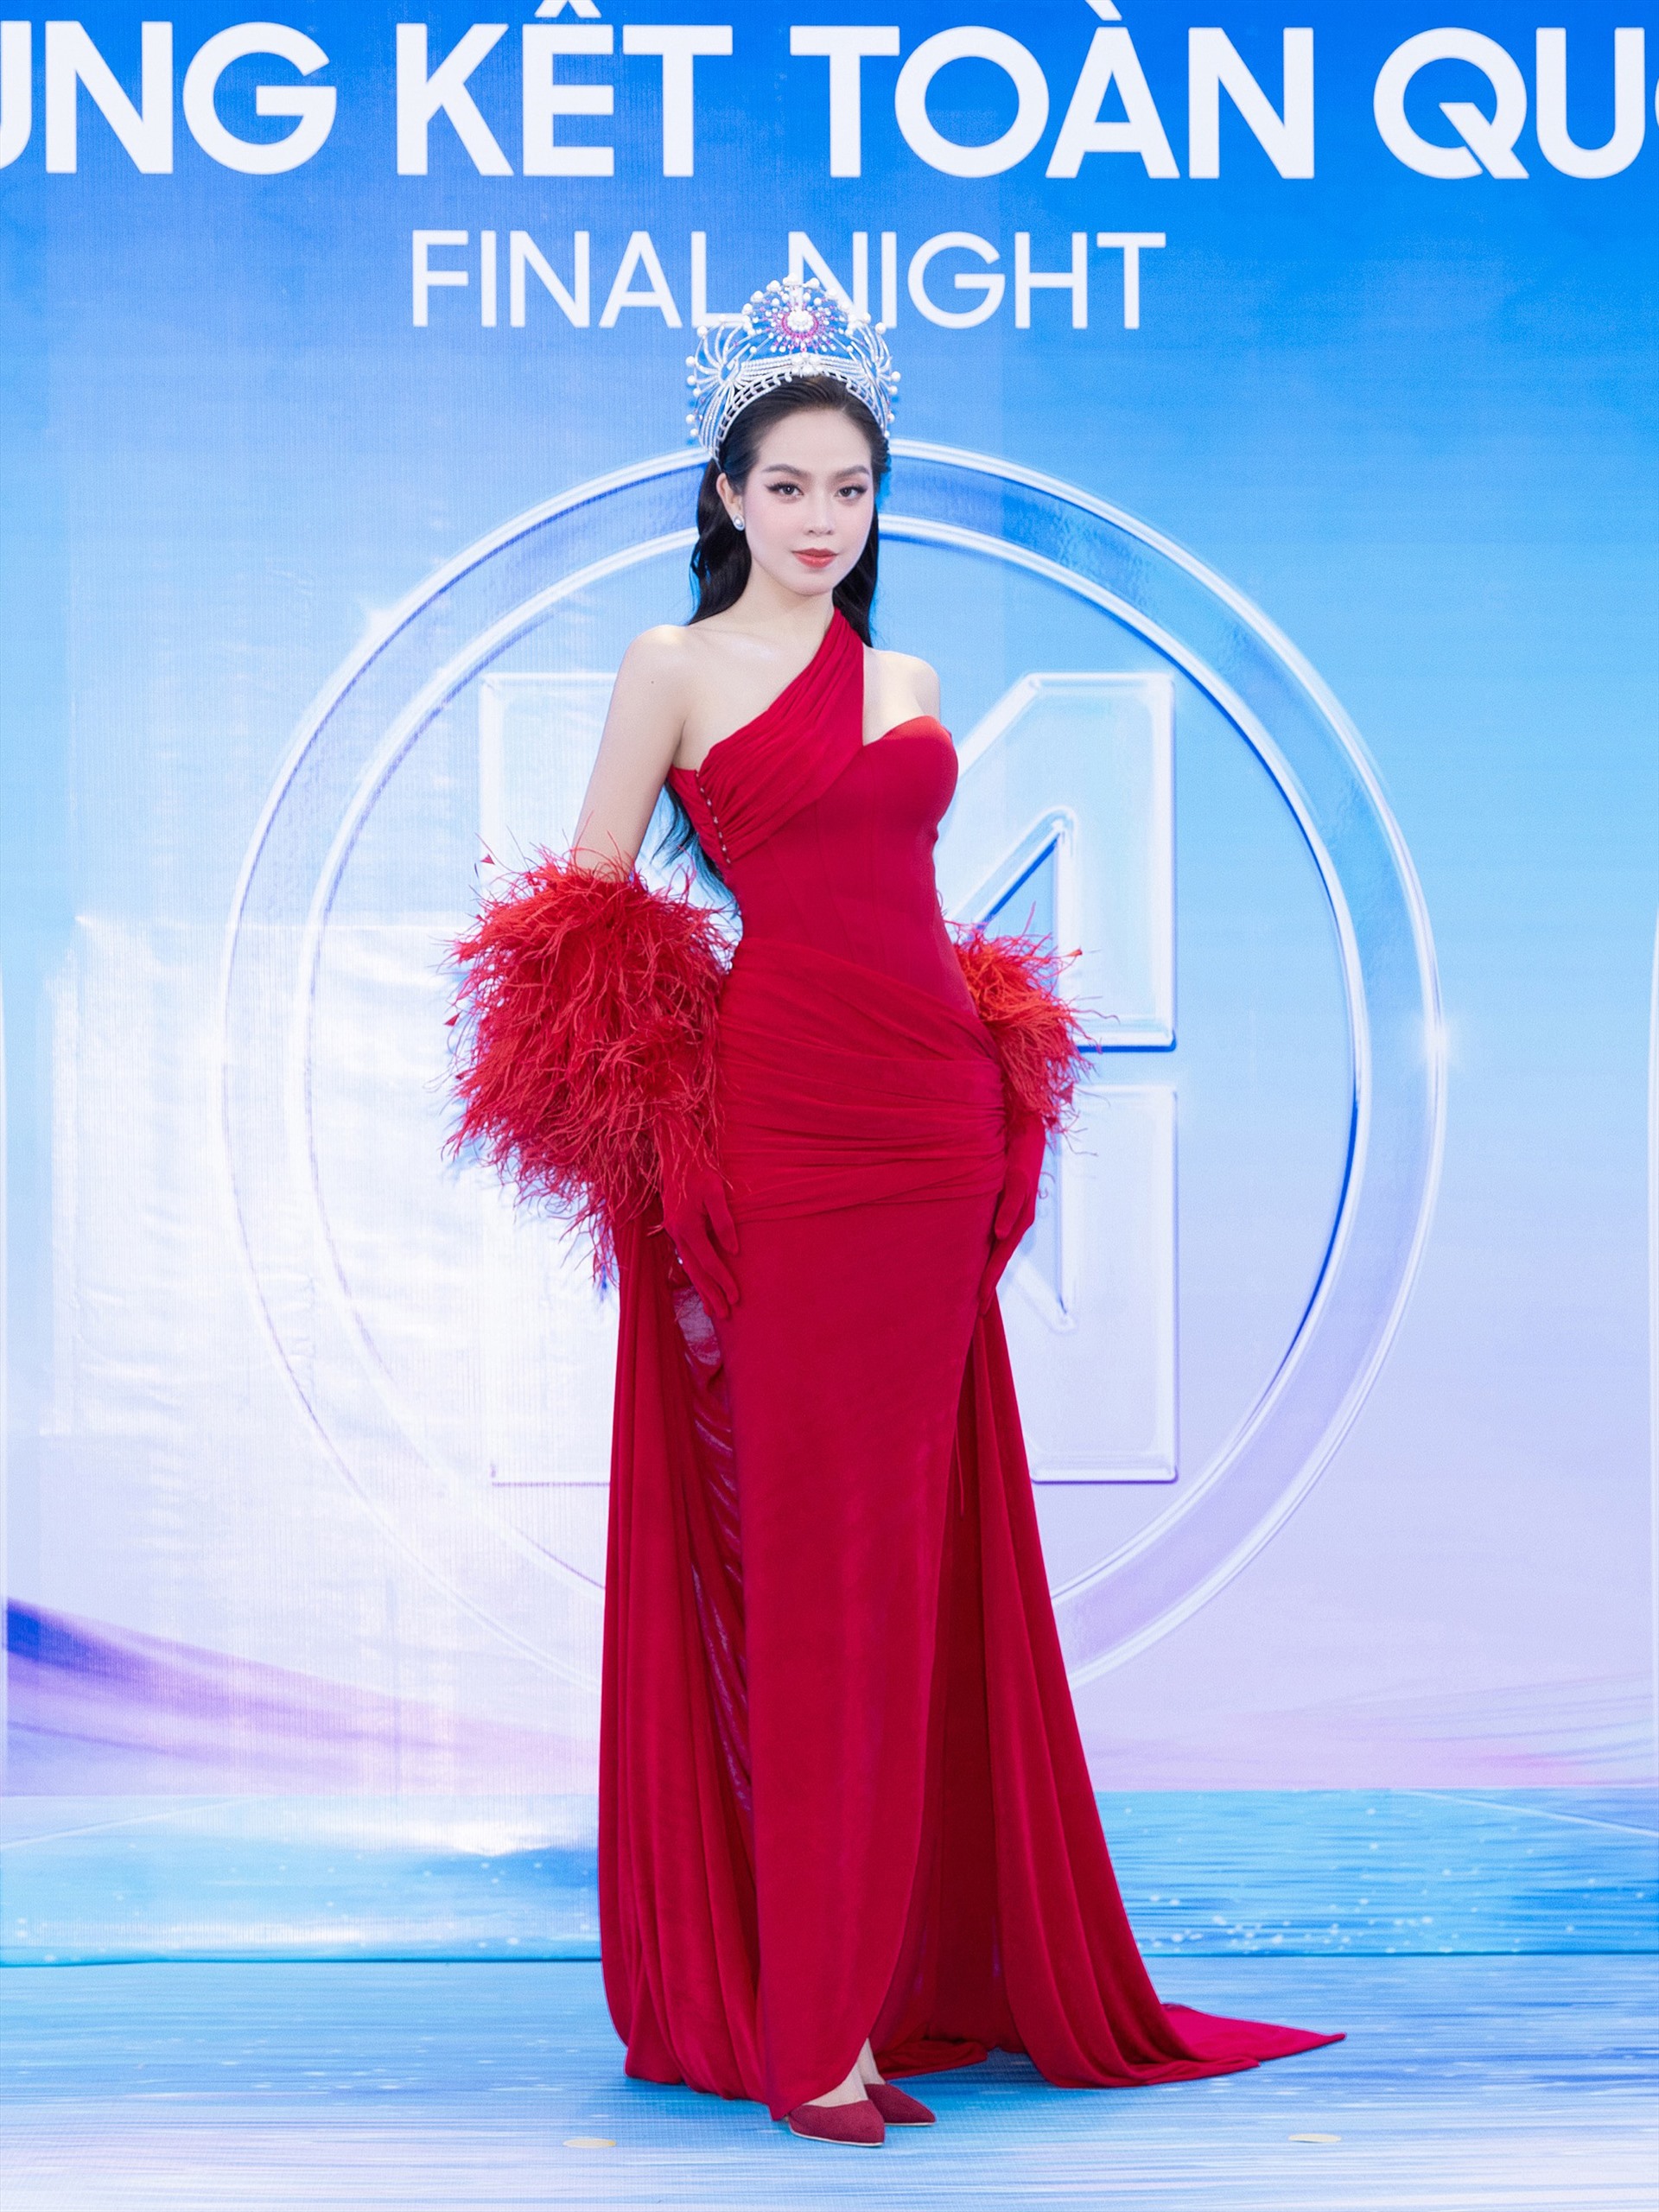 Và cũng chính bởi lợi thế chiều cao 1m75, tỉ lệ vóc dáng hoàn hảo của Thanh Thủy nên càng tôn lên giá trị và tinh thần của mẫu thiết kế - đúng như hình dung trong trí óc khi lớp vải vóc đã khoác lên cơ sống”.  Trước đó, tại thảm đỏ của Miss World Vietnam 2023, nàng hậu đã diện thiết kế này. Cô nhận được nhiều lời khen ngợi về nhan sắc.